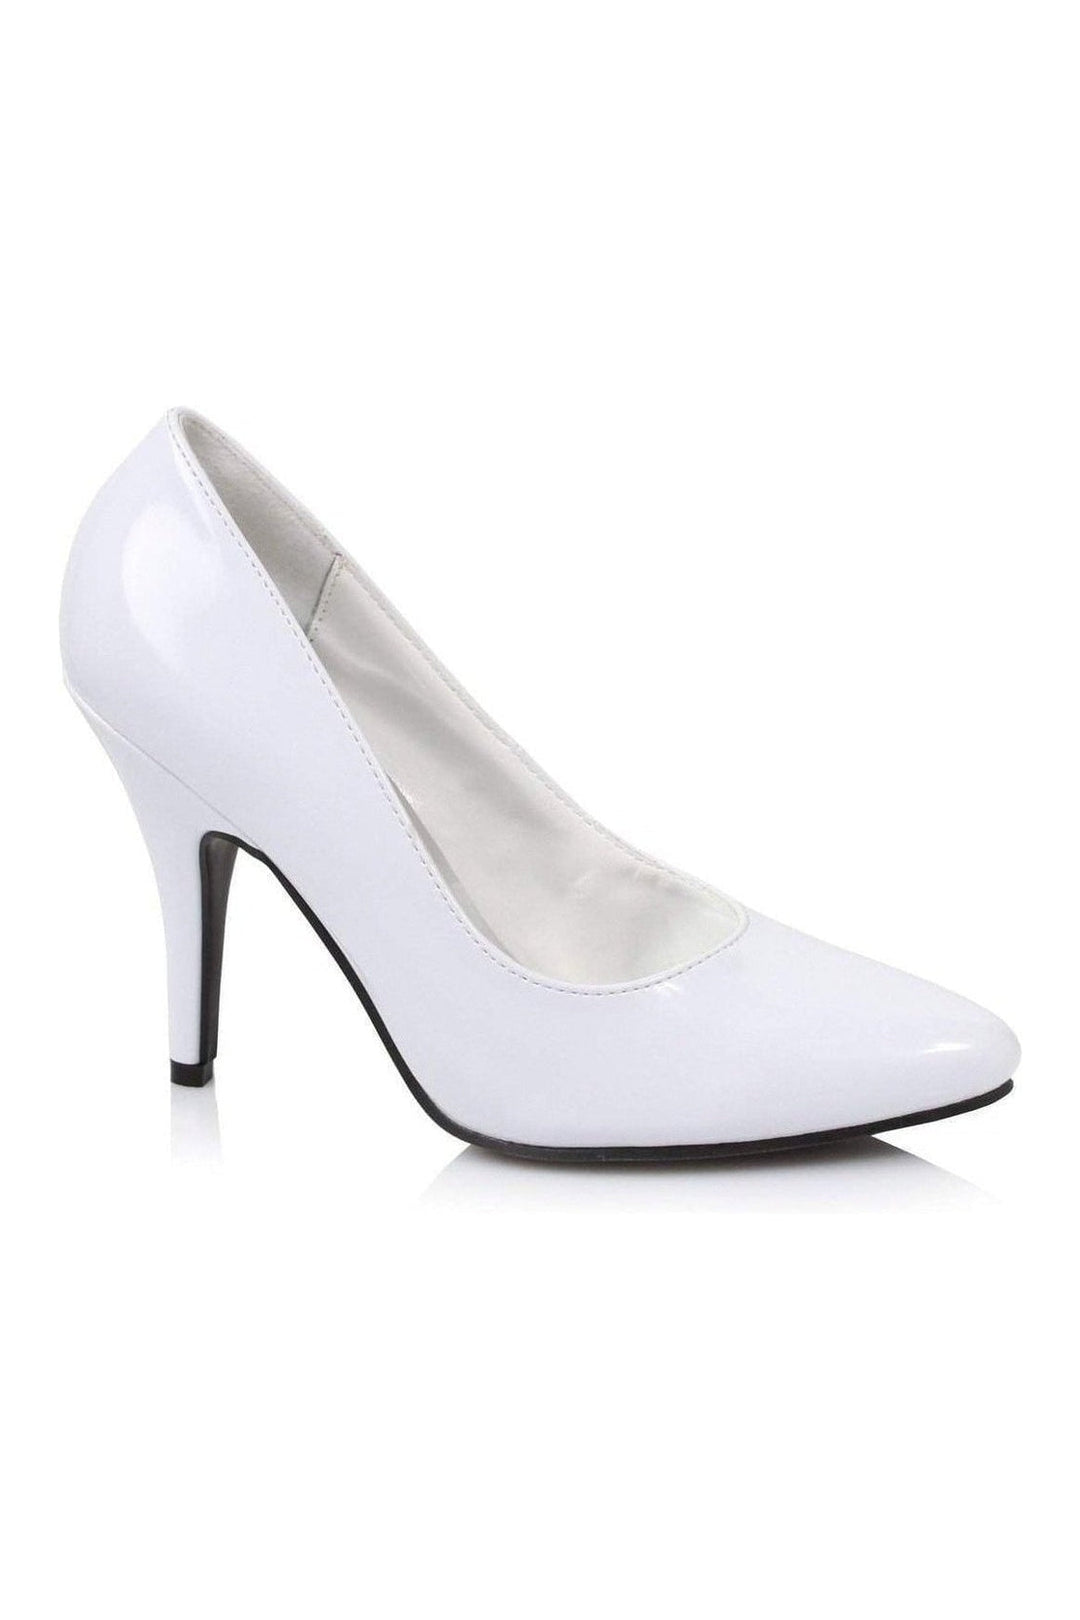 8400 Pump | White Patent-Ellie Shoes-SEXYSHOES.COM